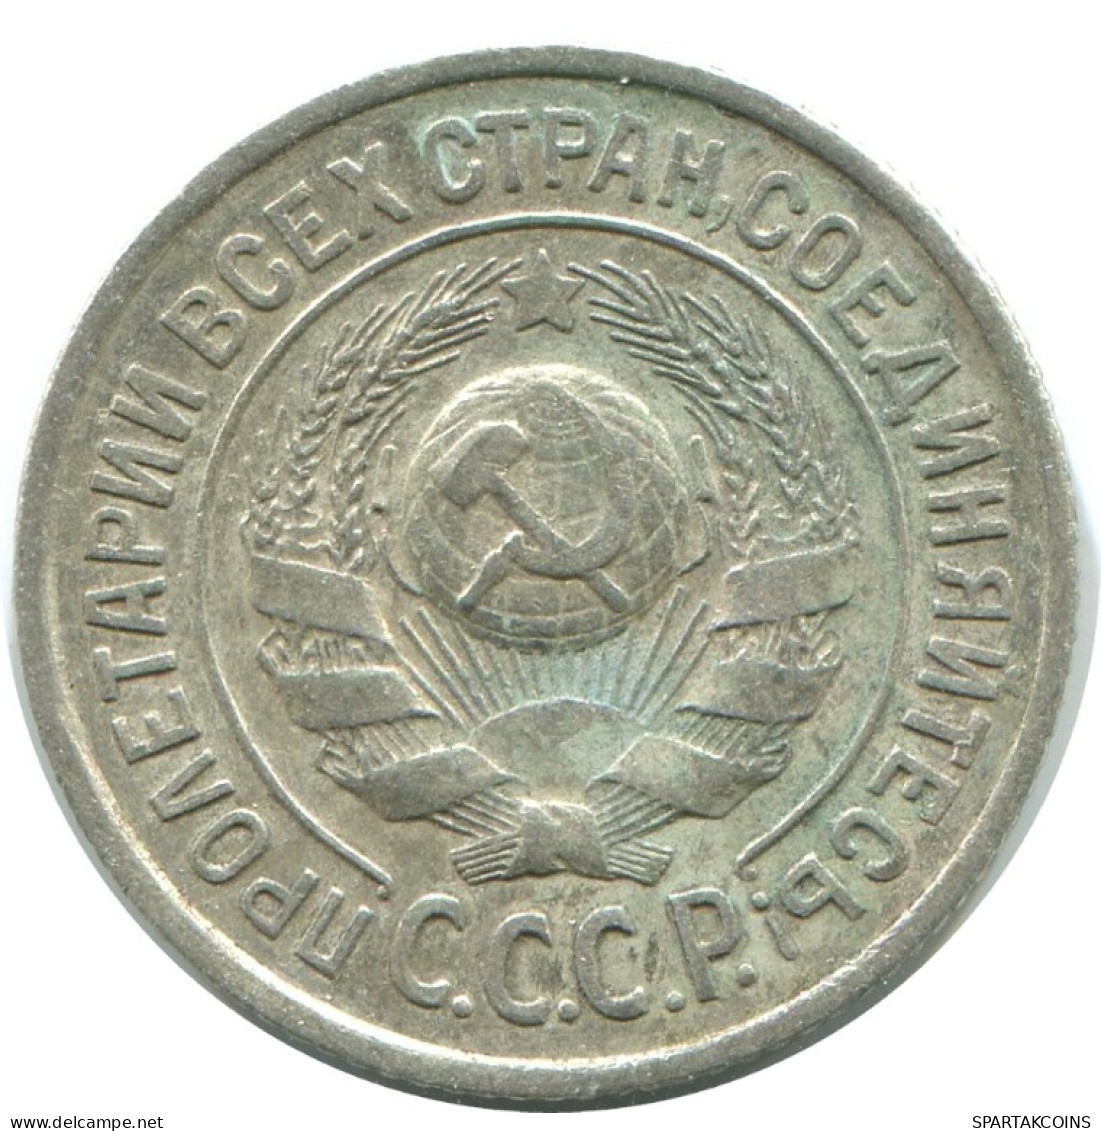 15 KOPEKS 1925 RUSSLAND RUSSIA USSR SILBER Münze HIGH GRADE #AF255.4.D.A - Russie